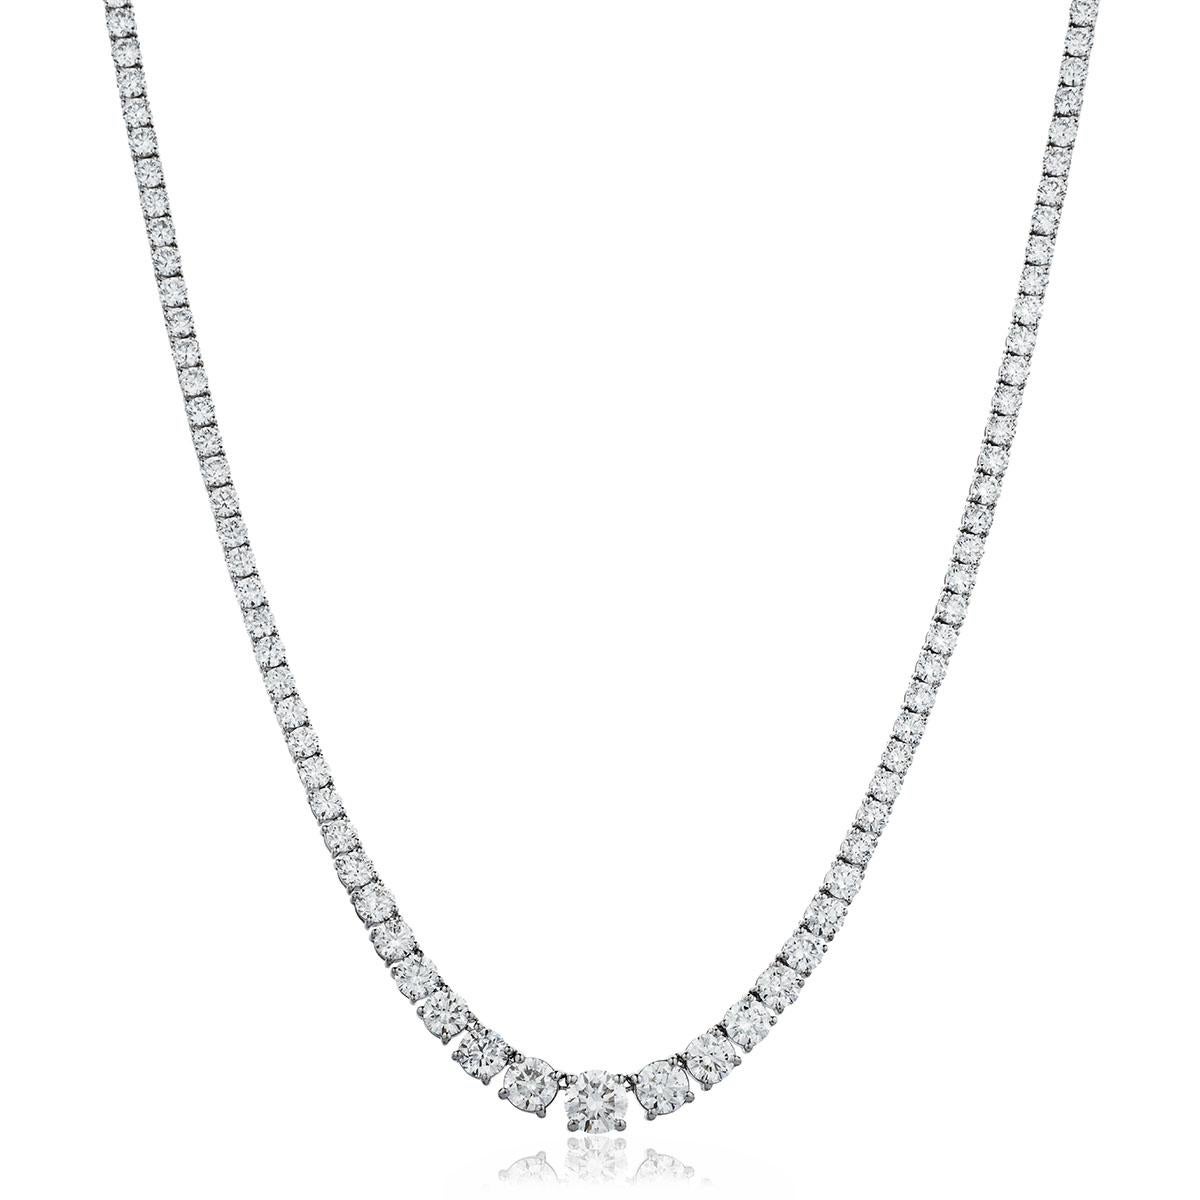 14 carat diamond necklace